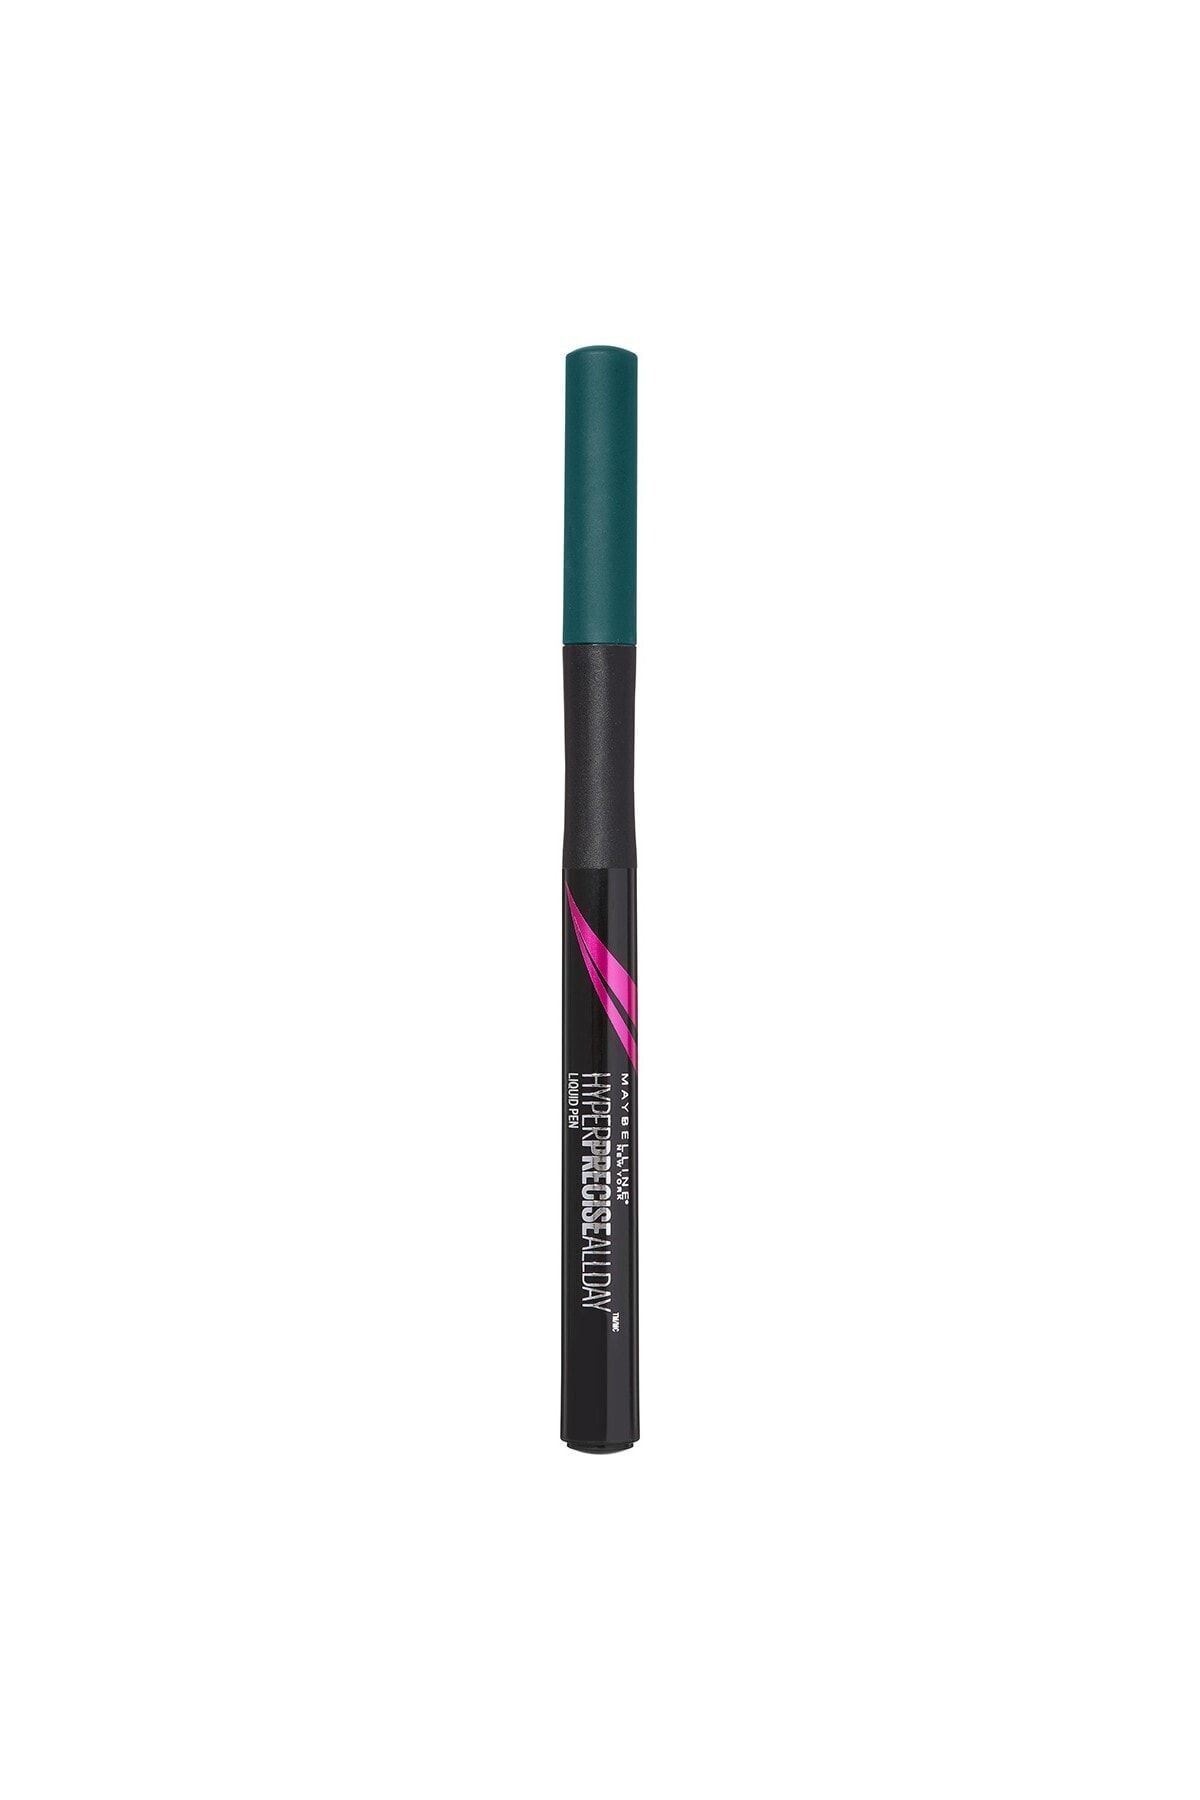 L'Oreal Paris Maybelline Likit Yeşil Eyeliner - Hyper Precise All Day Eyeliner Jungle Vert 3600531047788